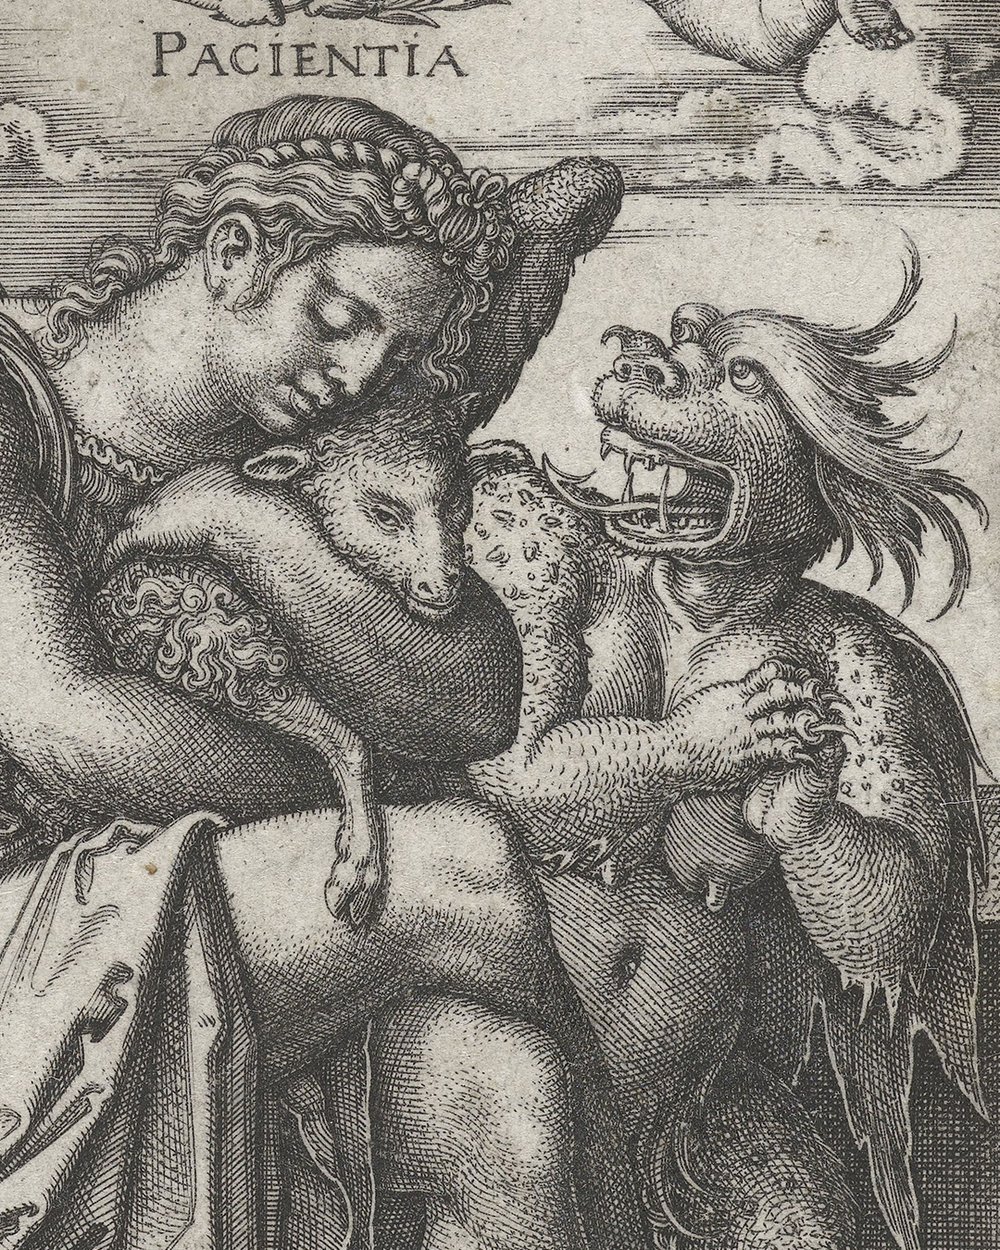 ''Patience (Patientia)'' (1540)